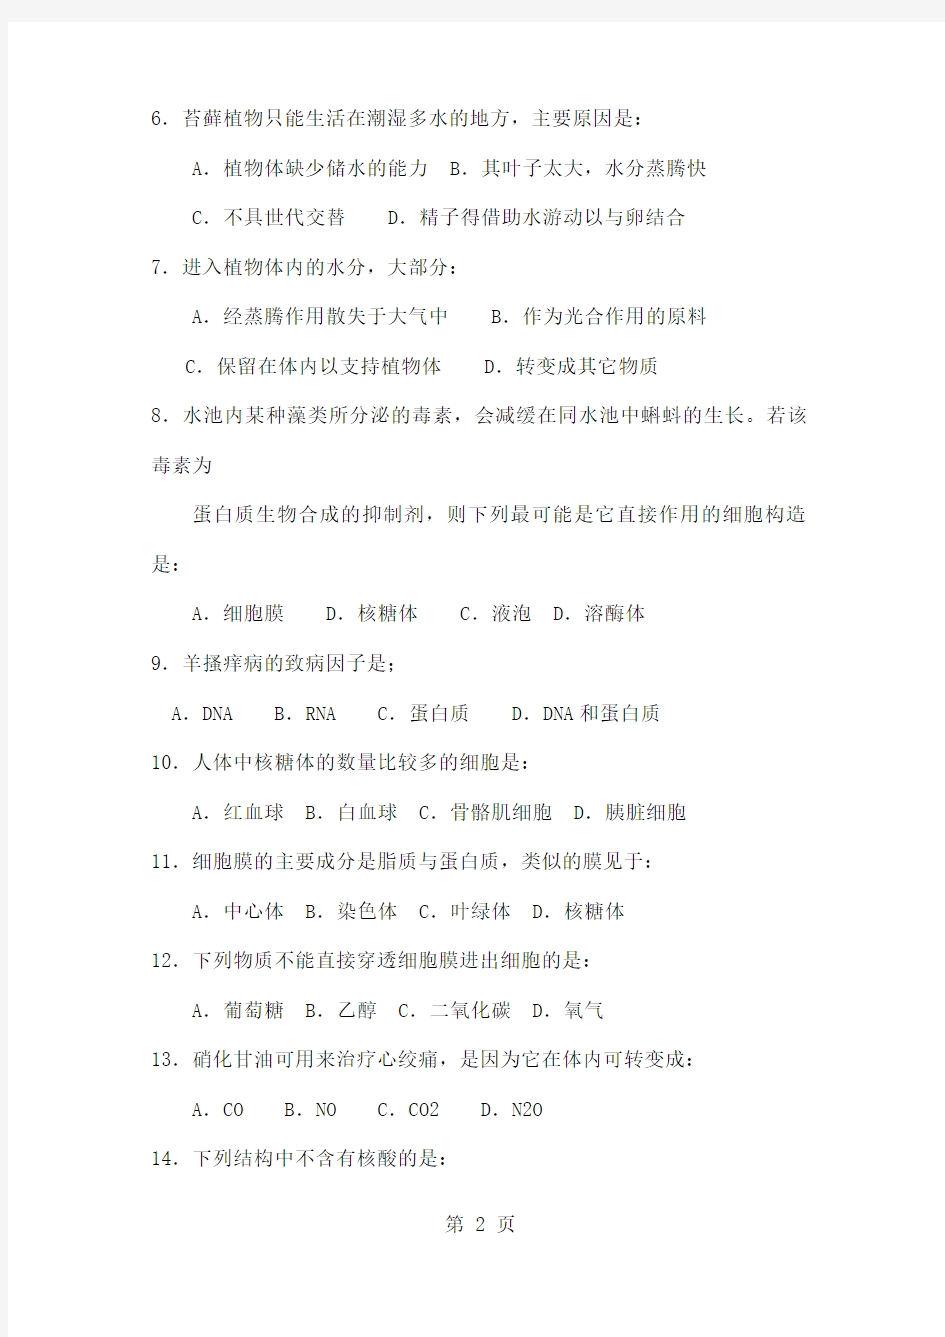 2019年江苏省中学生生物学竞赛共27页